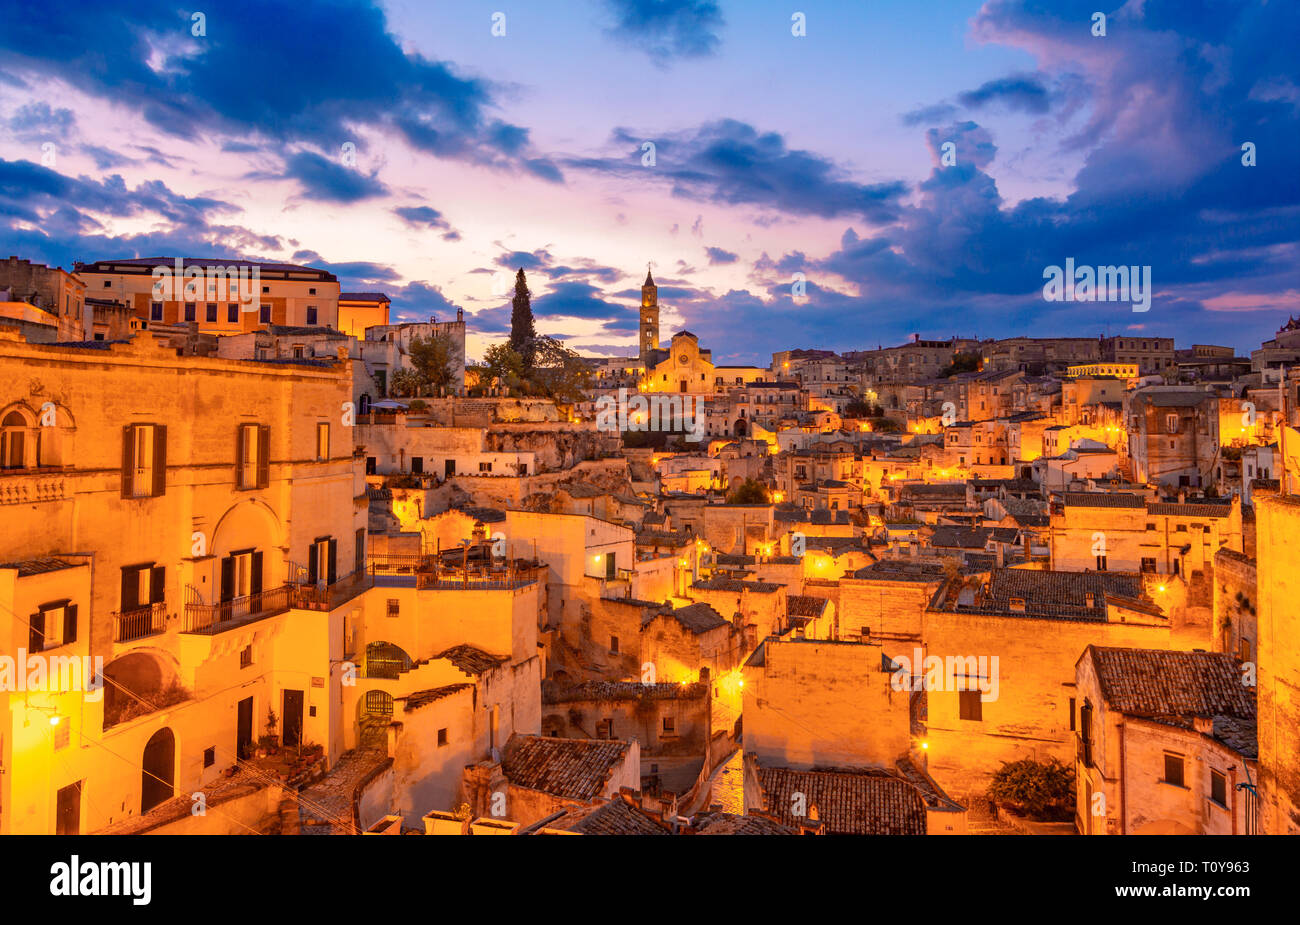 Matera, Basilicata, Italia: vista nocturna de la ciudad vieja - Sassi di Matera, Capital Europea de la cultura, al amanecer Foto de stock